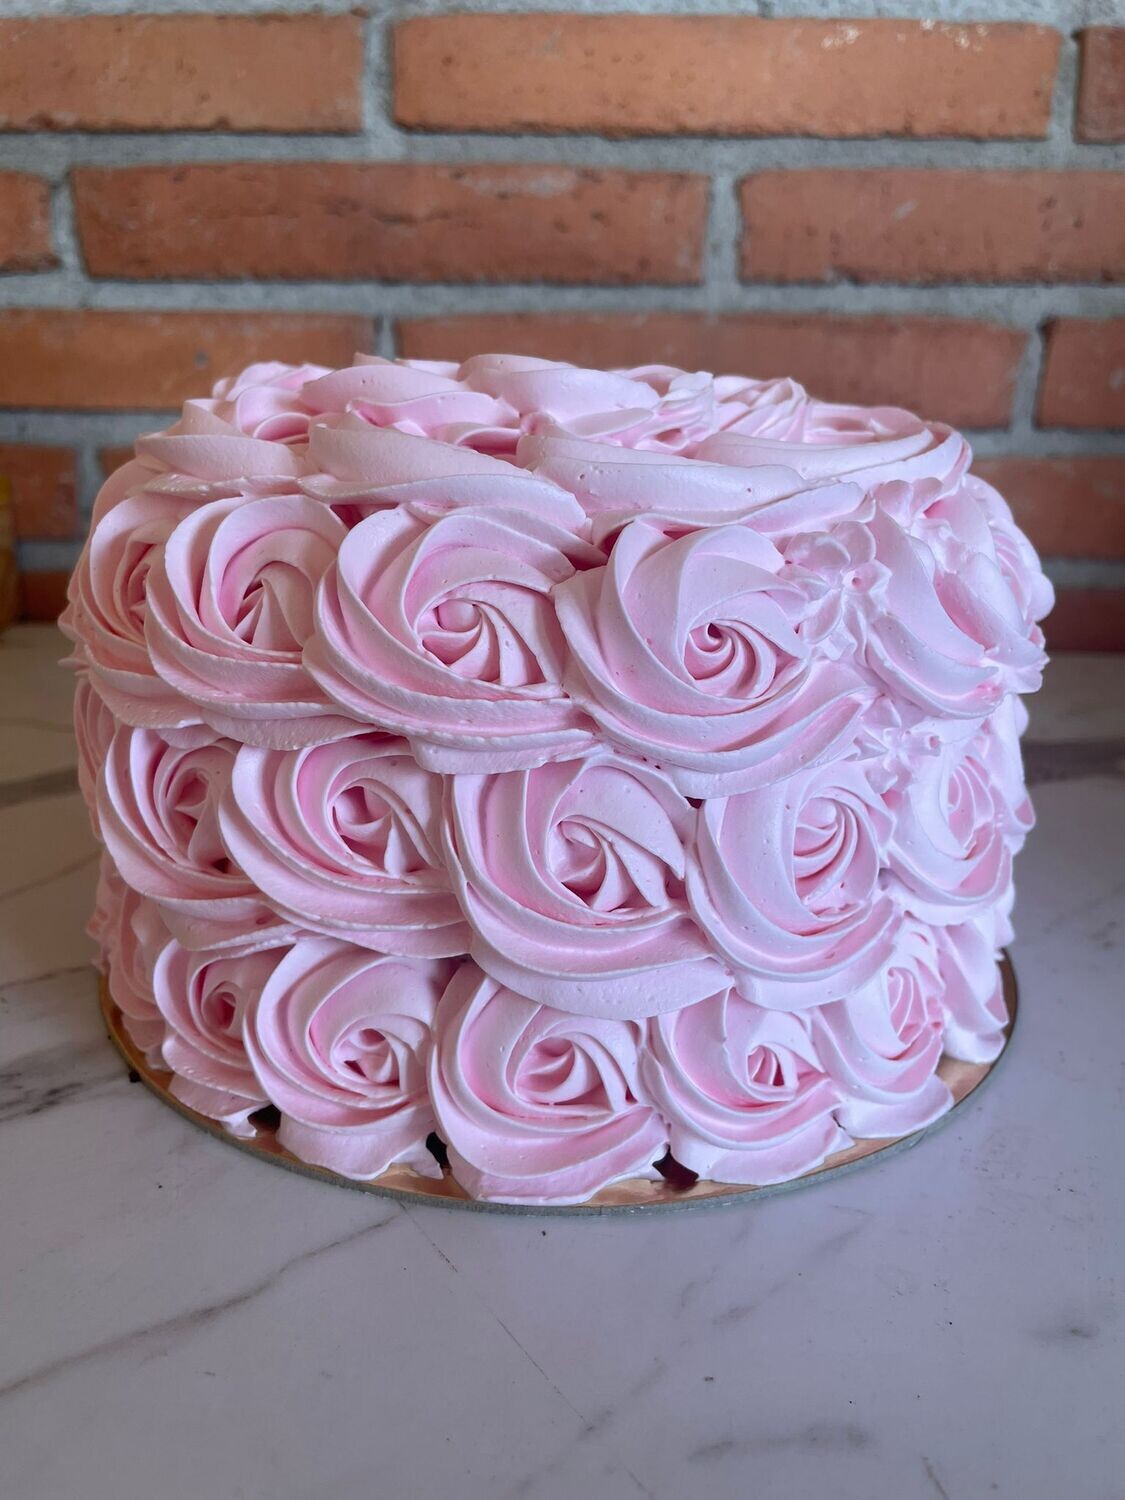 Pastel Smach cake con flores buttercream desde 6 raciones